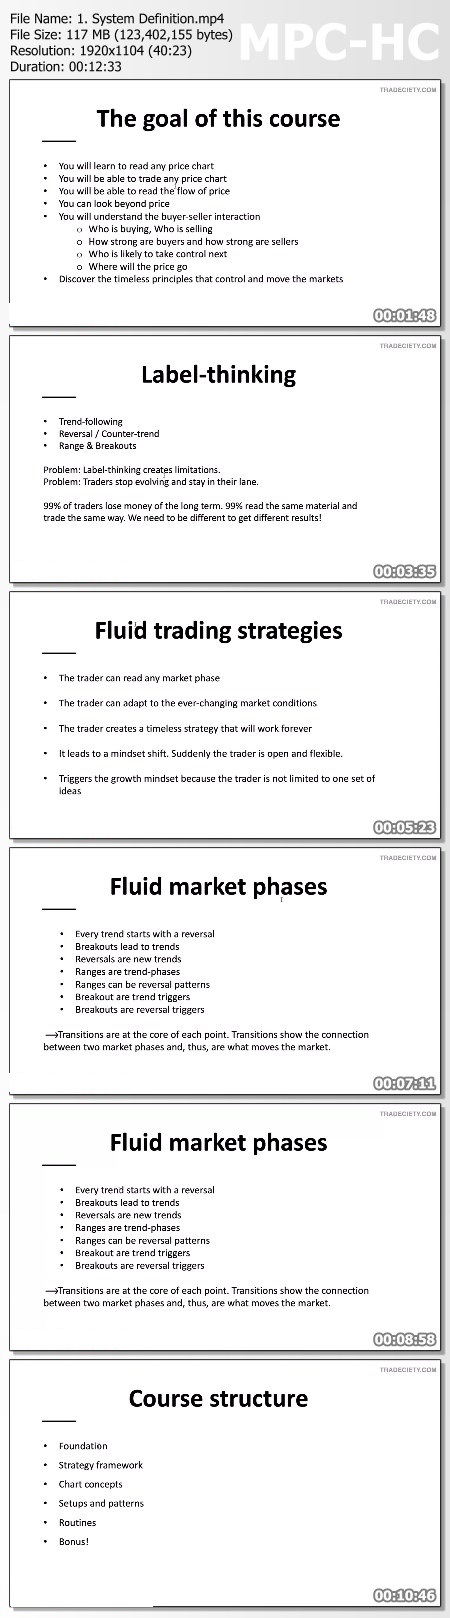 Tradeciety - Forex Trading Masterclass